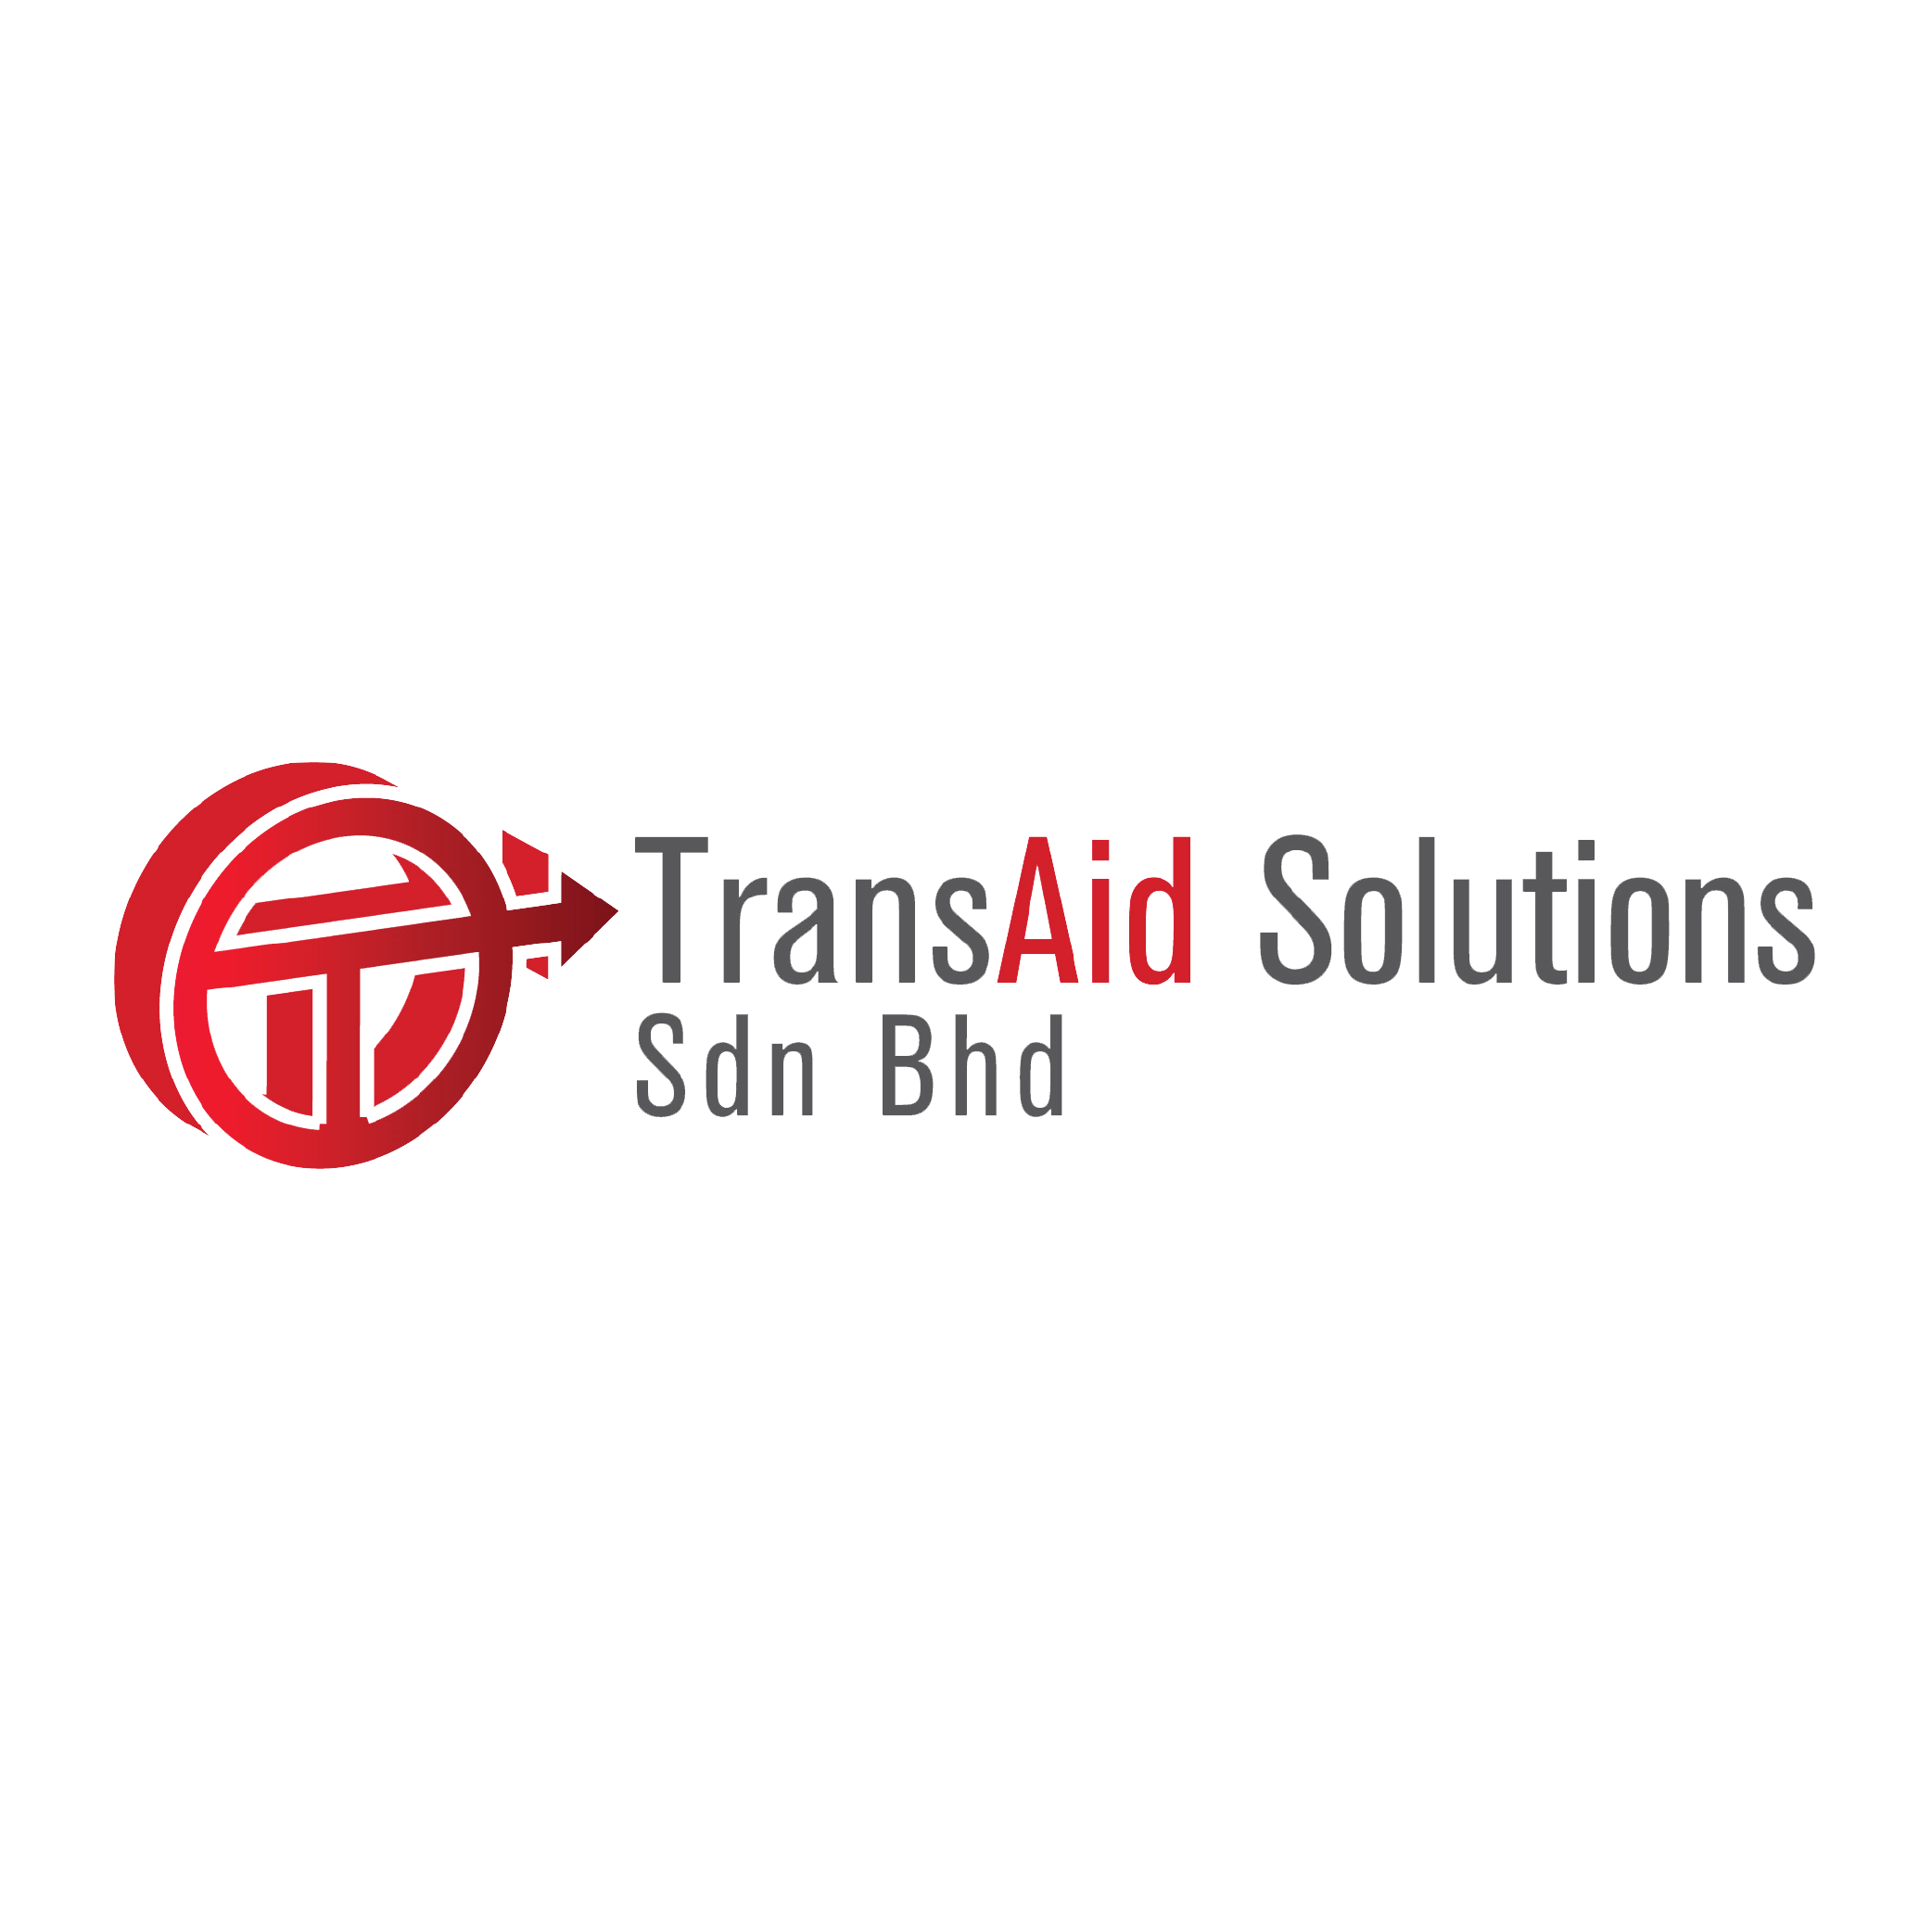 TransAid Solutions Sdn. Bhd